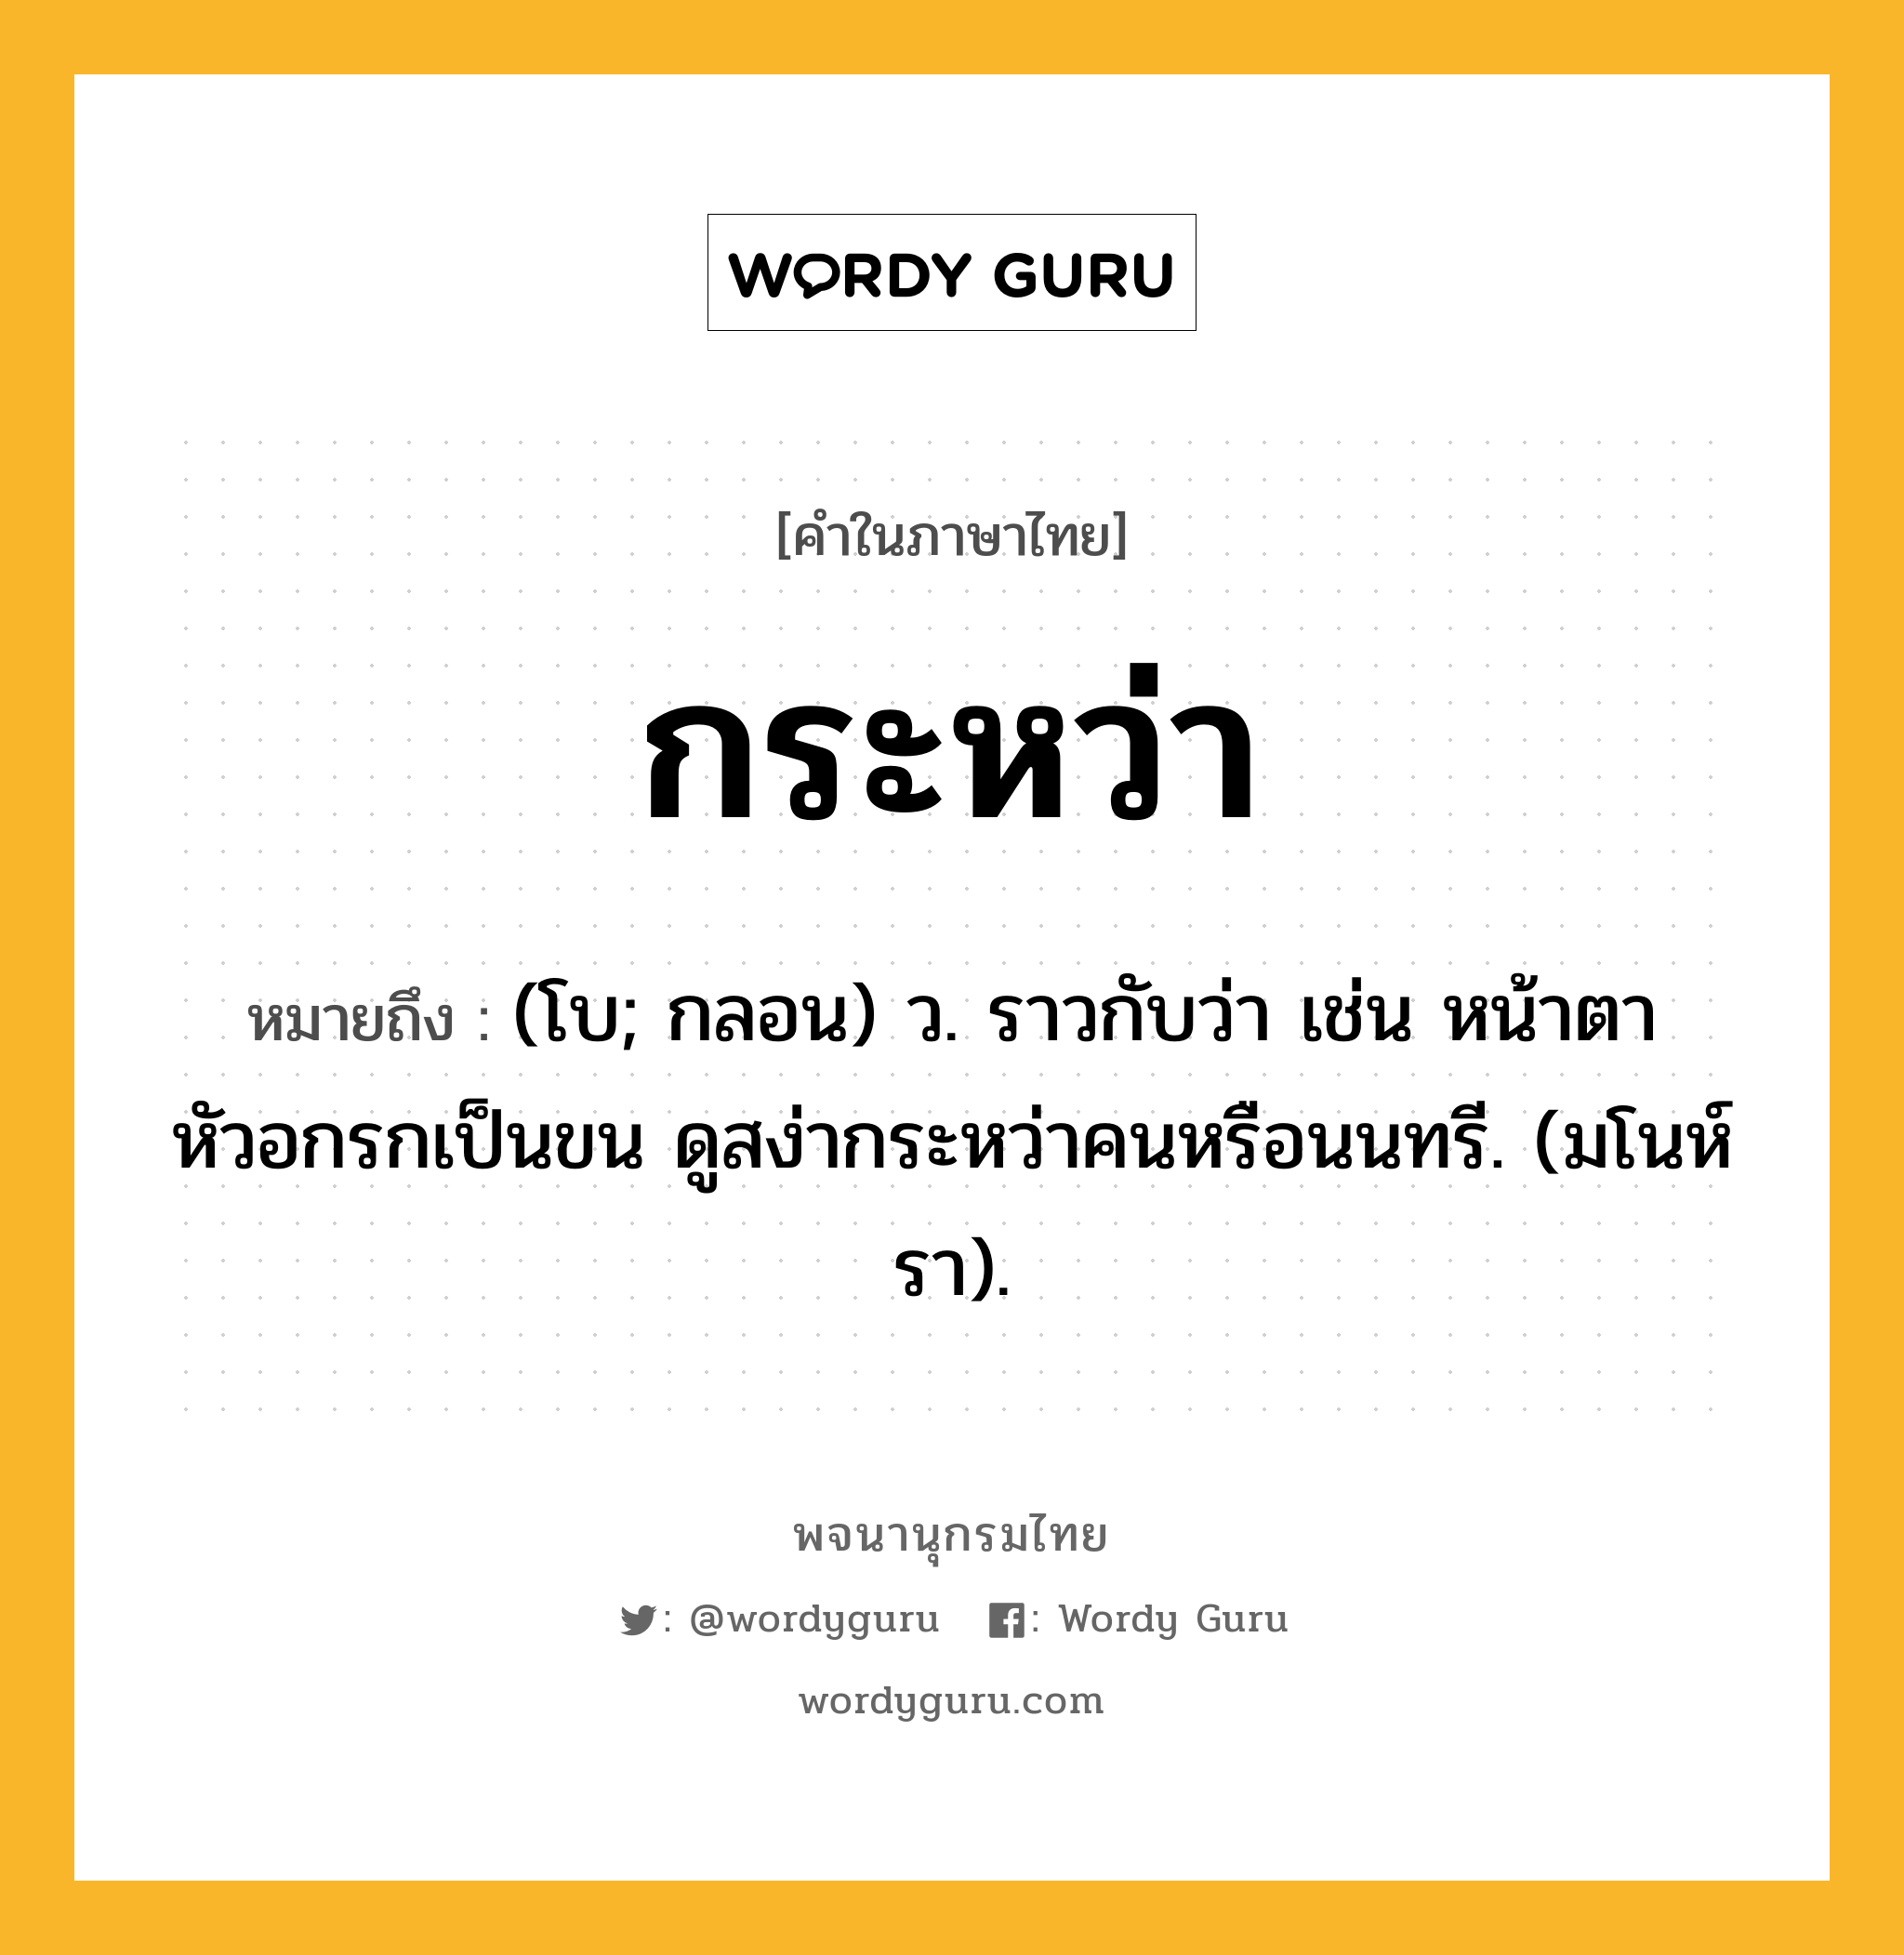 กระหว่า หมายถึงอะไร?, คำในภาษาไทย กระหว่า หมายถึง (โบ; กลอน) ว. ราวกับว่า เช่น หน้าตาหัวอกรกเป็นขน ดูสง่ากระหว่าคนหรือนนทรี. (มโนห์รา).